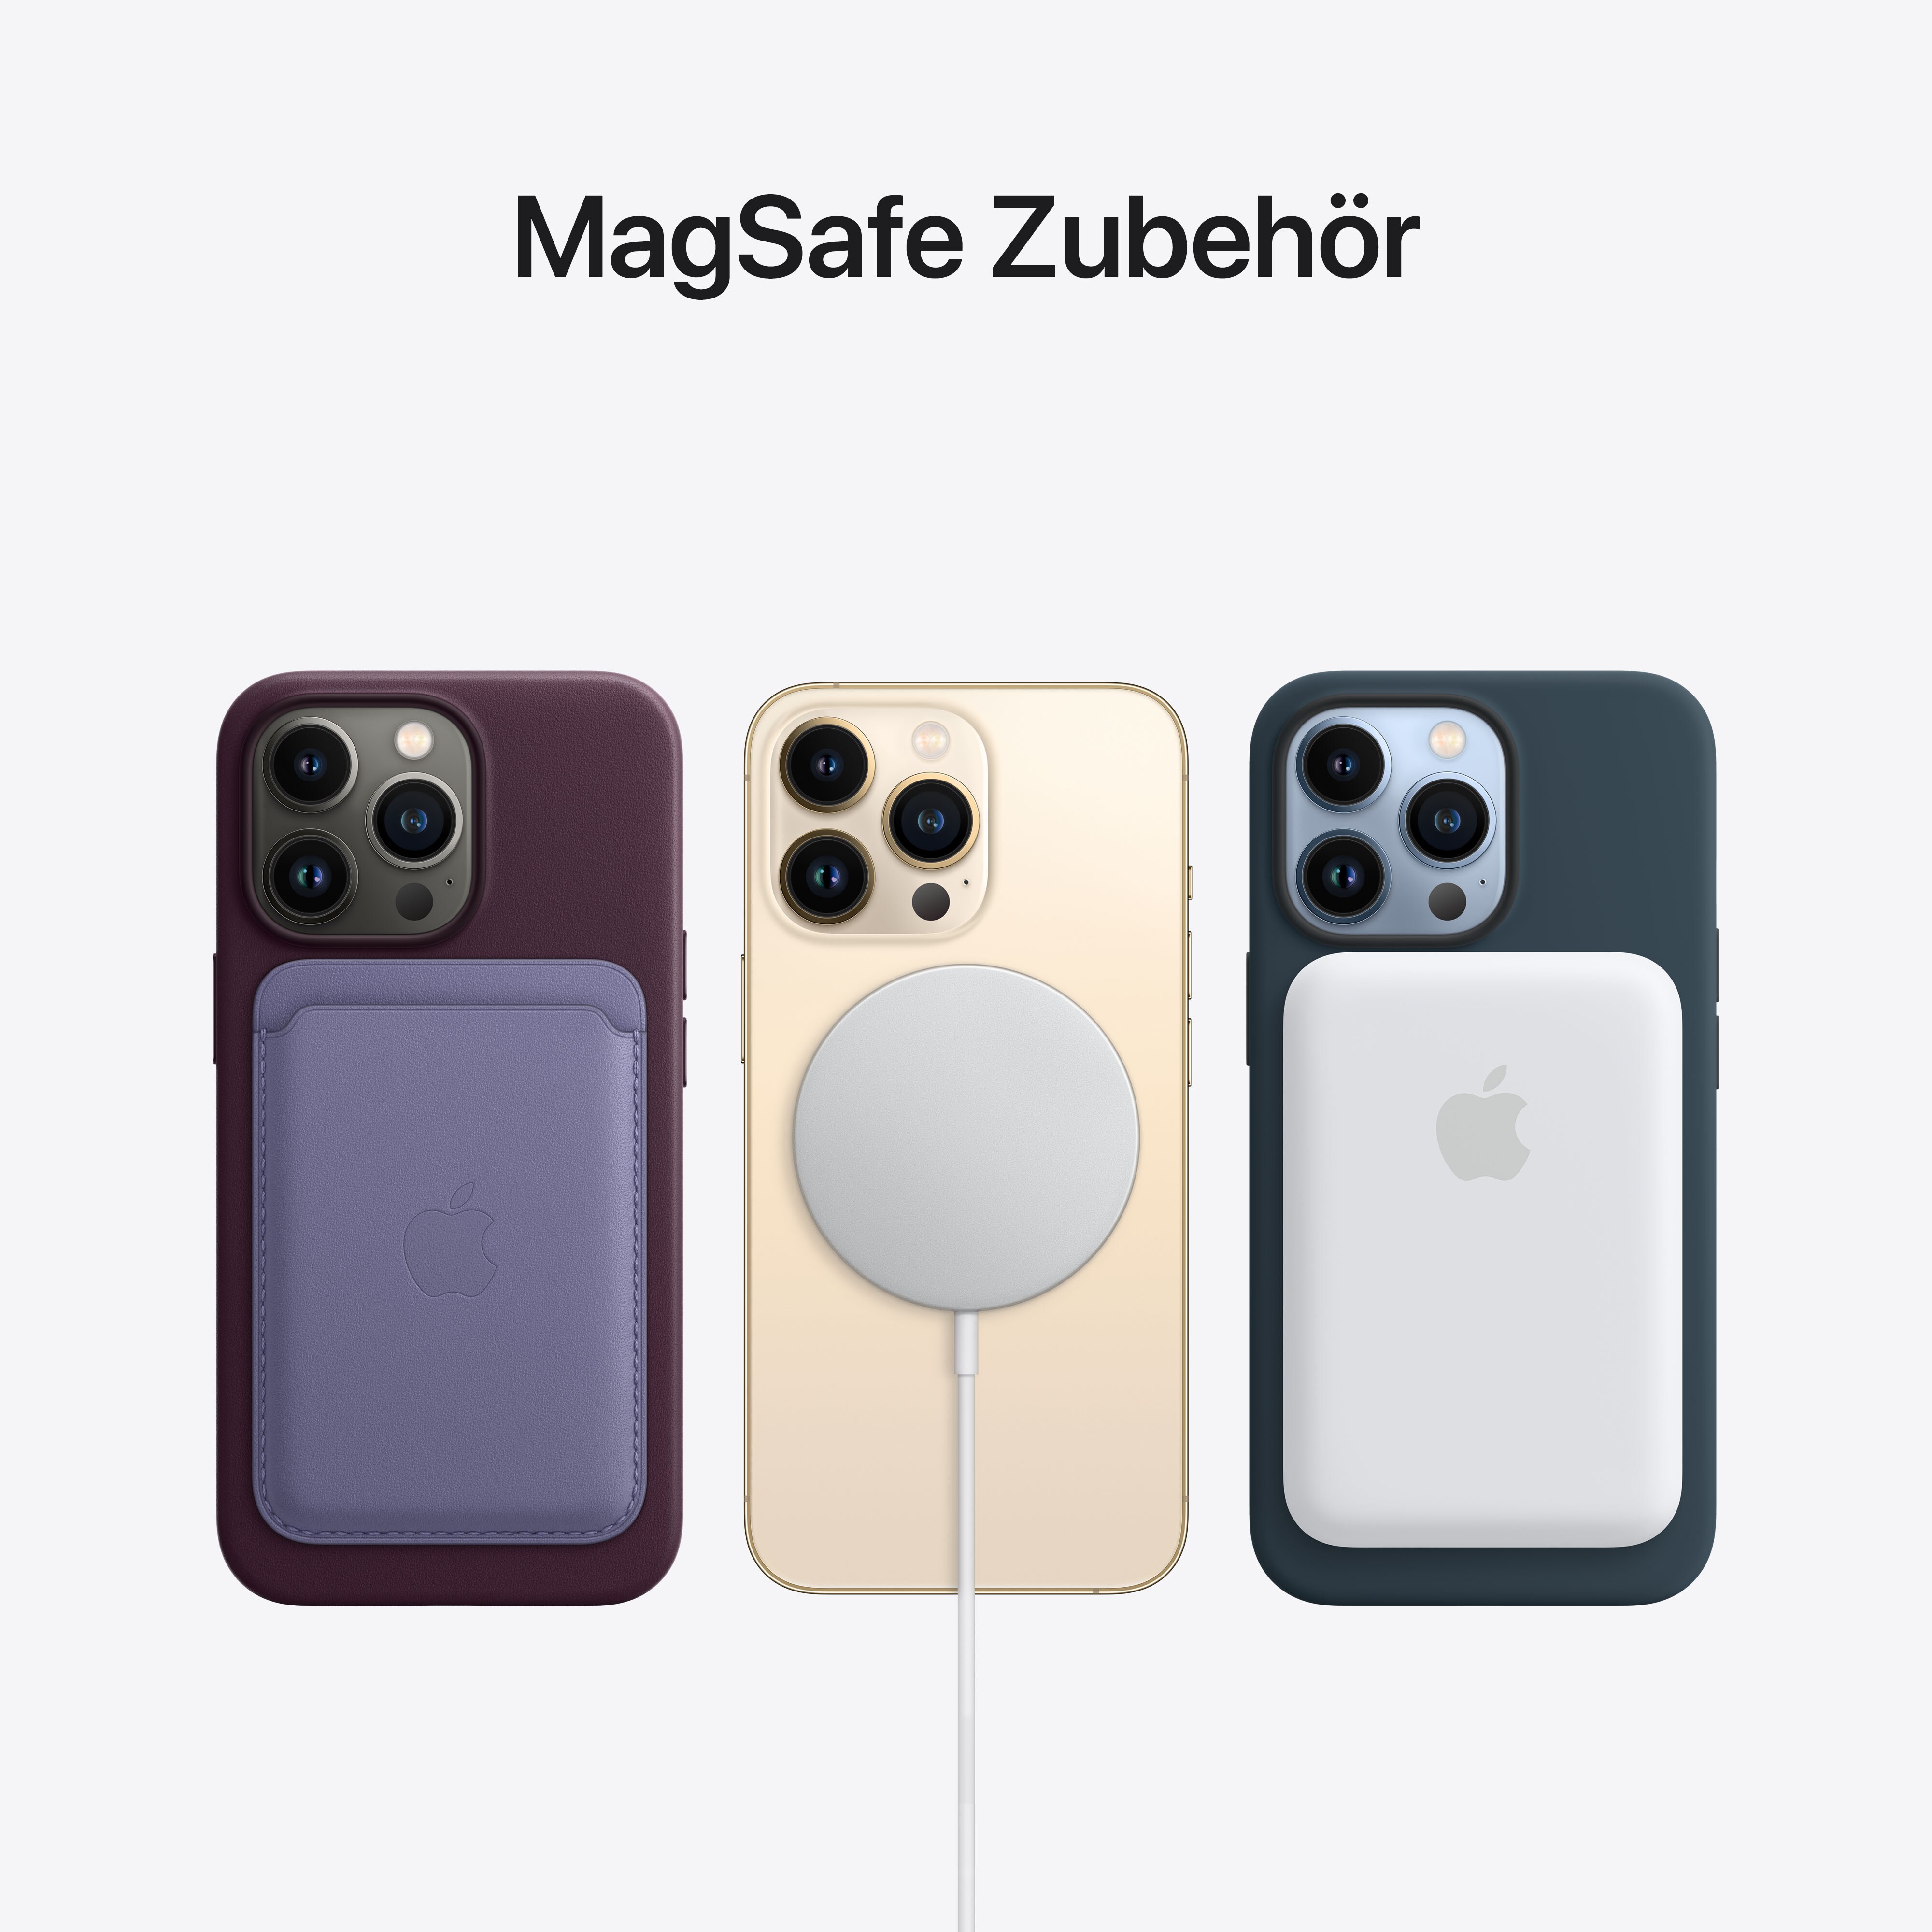 MagSafe-Zubehör für iPhone 12 und iPhone 13